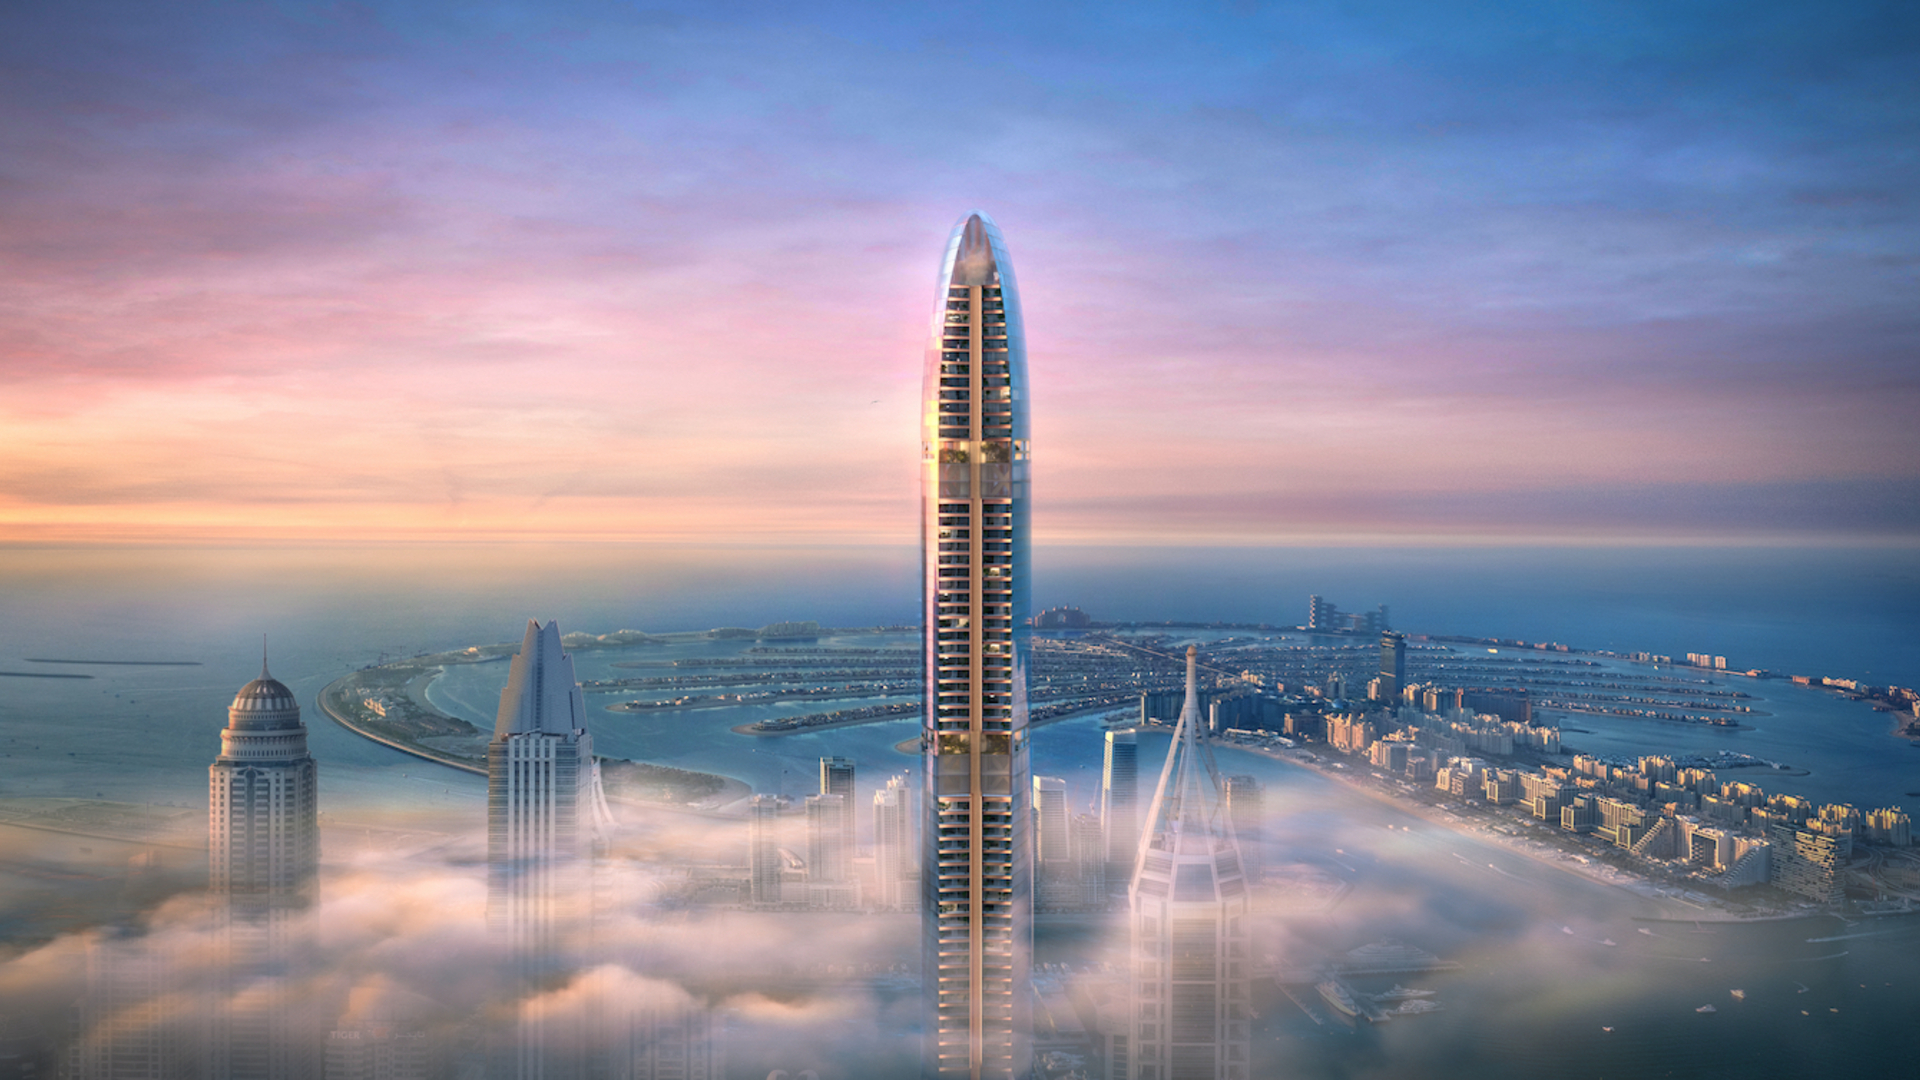 Самое высокое жилое здание в мире строится в престижном районе Дубай Марина.